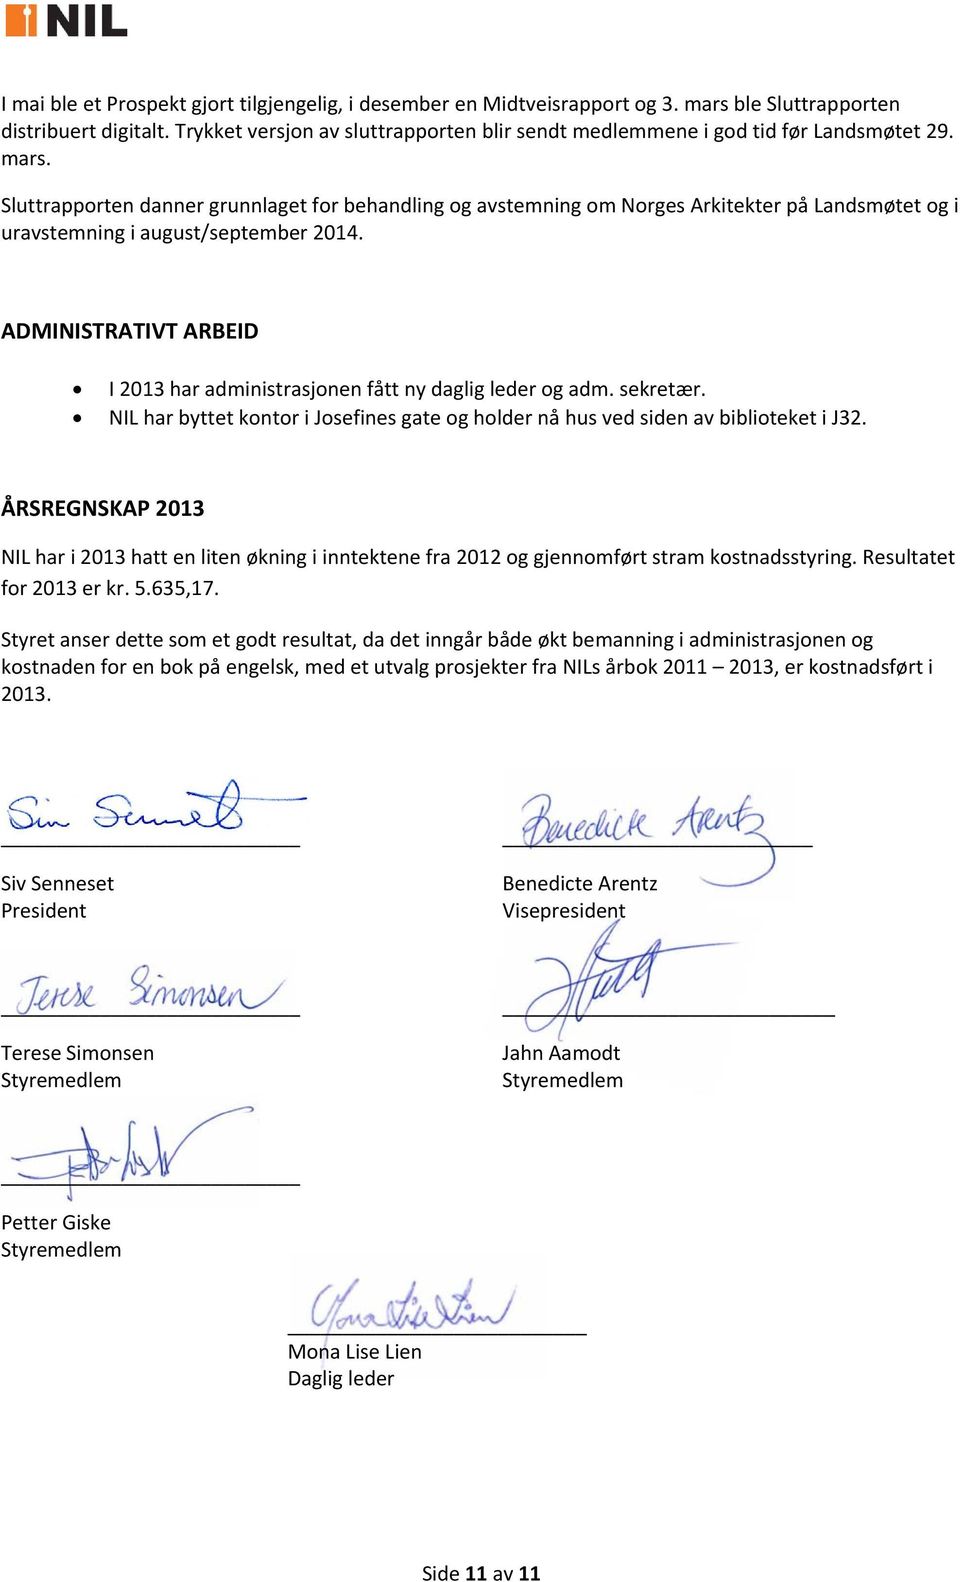 Sluttrapporten danner grunnlaget for behandling og avstemning om Norges Arkitekter på Landsmøtet og i uravstemning i august/september 2014.